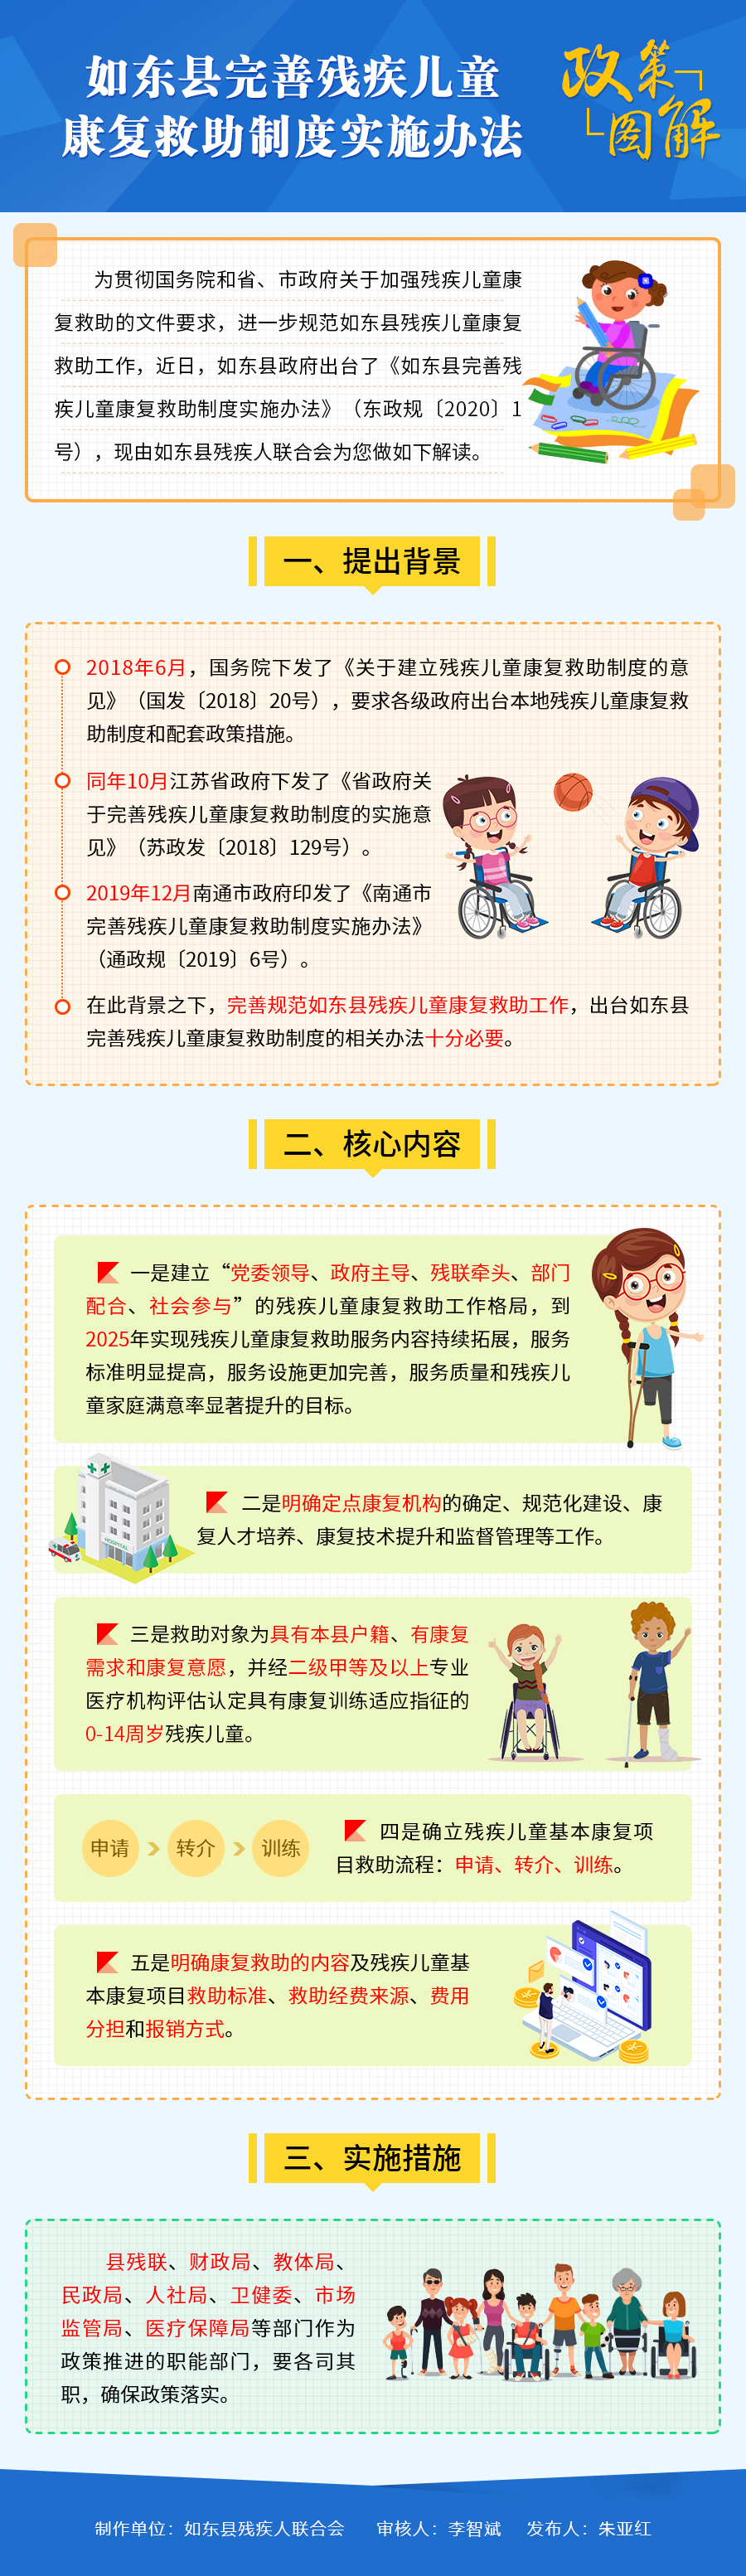 《如东县完善残疾儿童康复救助制度实施办法》图解-200615.png